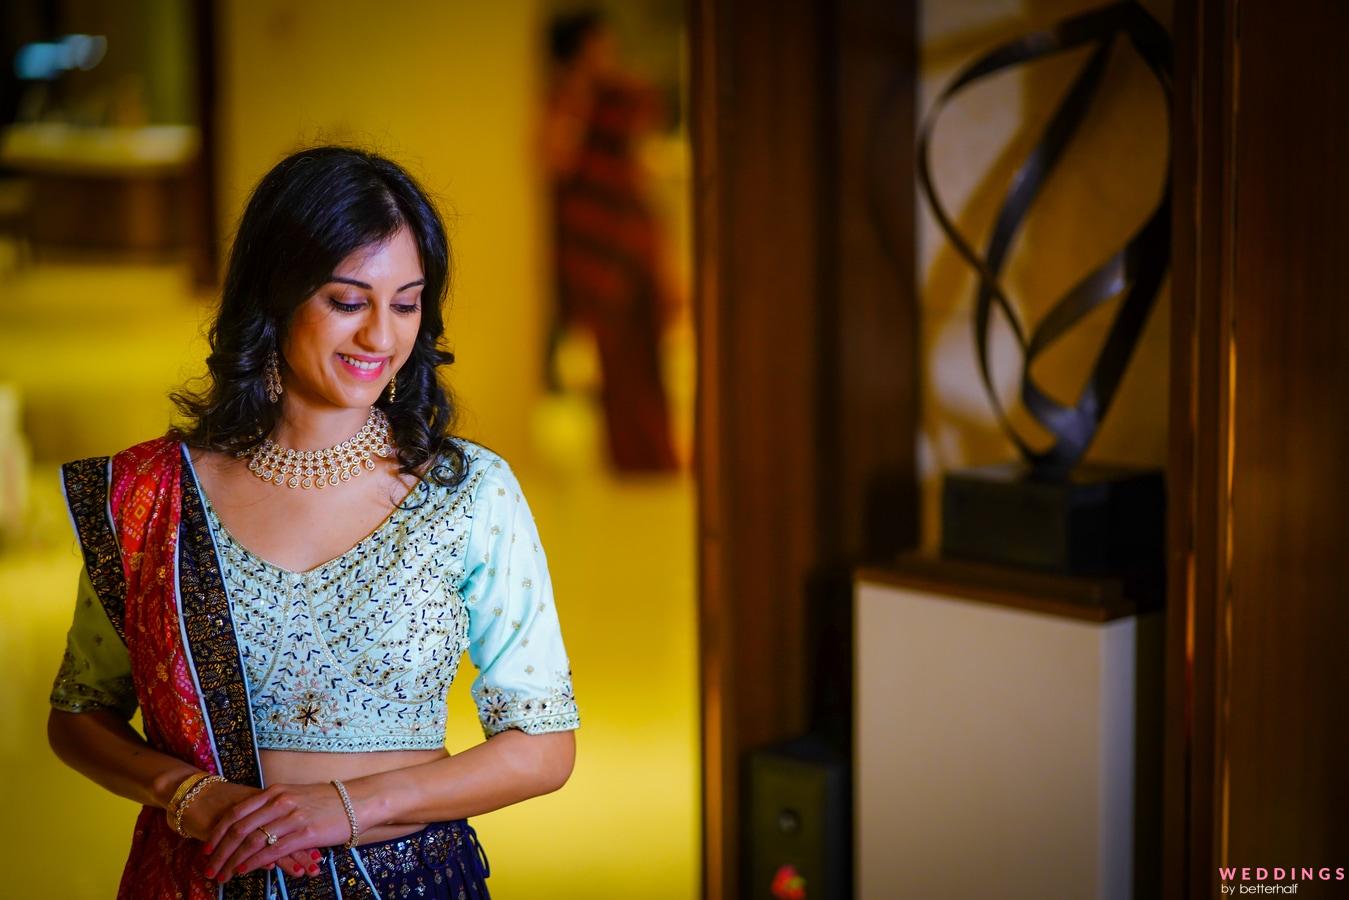 Miss India 2022, Sini Shetty Stylish Designer Sarees for Wedding Function |  IWMBuzz